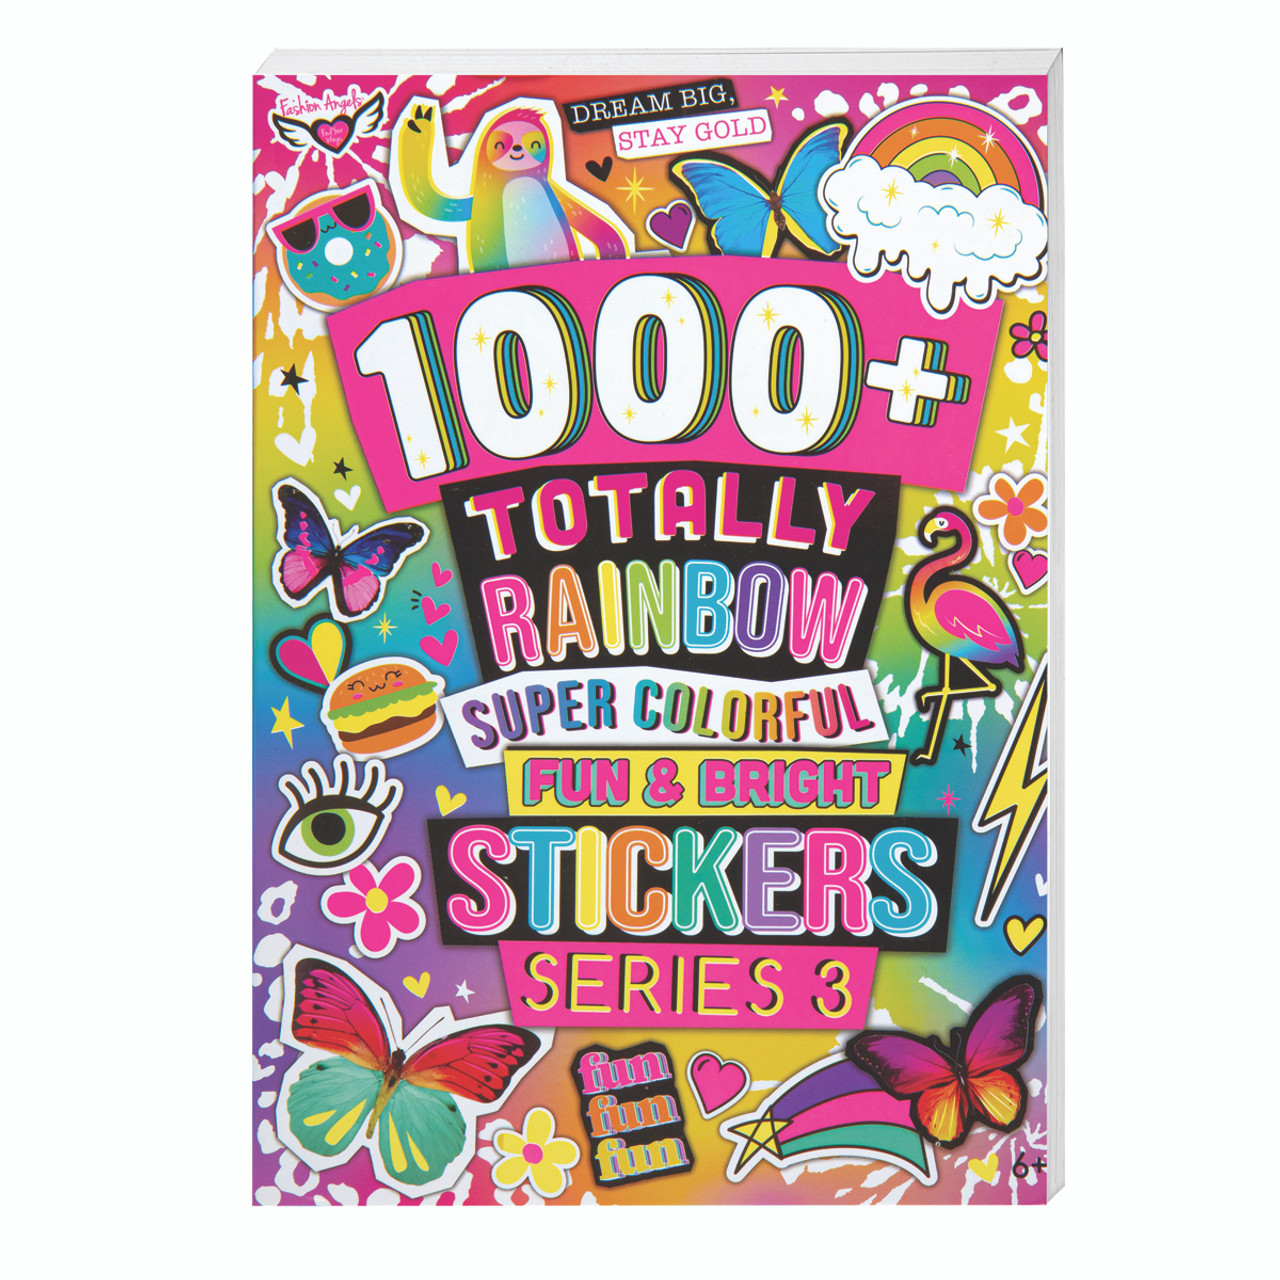 1000+ Ridiculously Cute Sticker Book Series 1